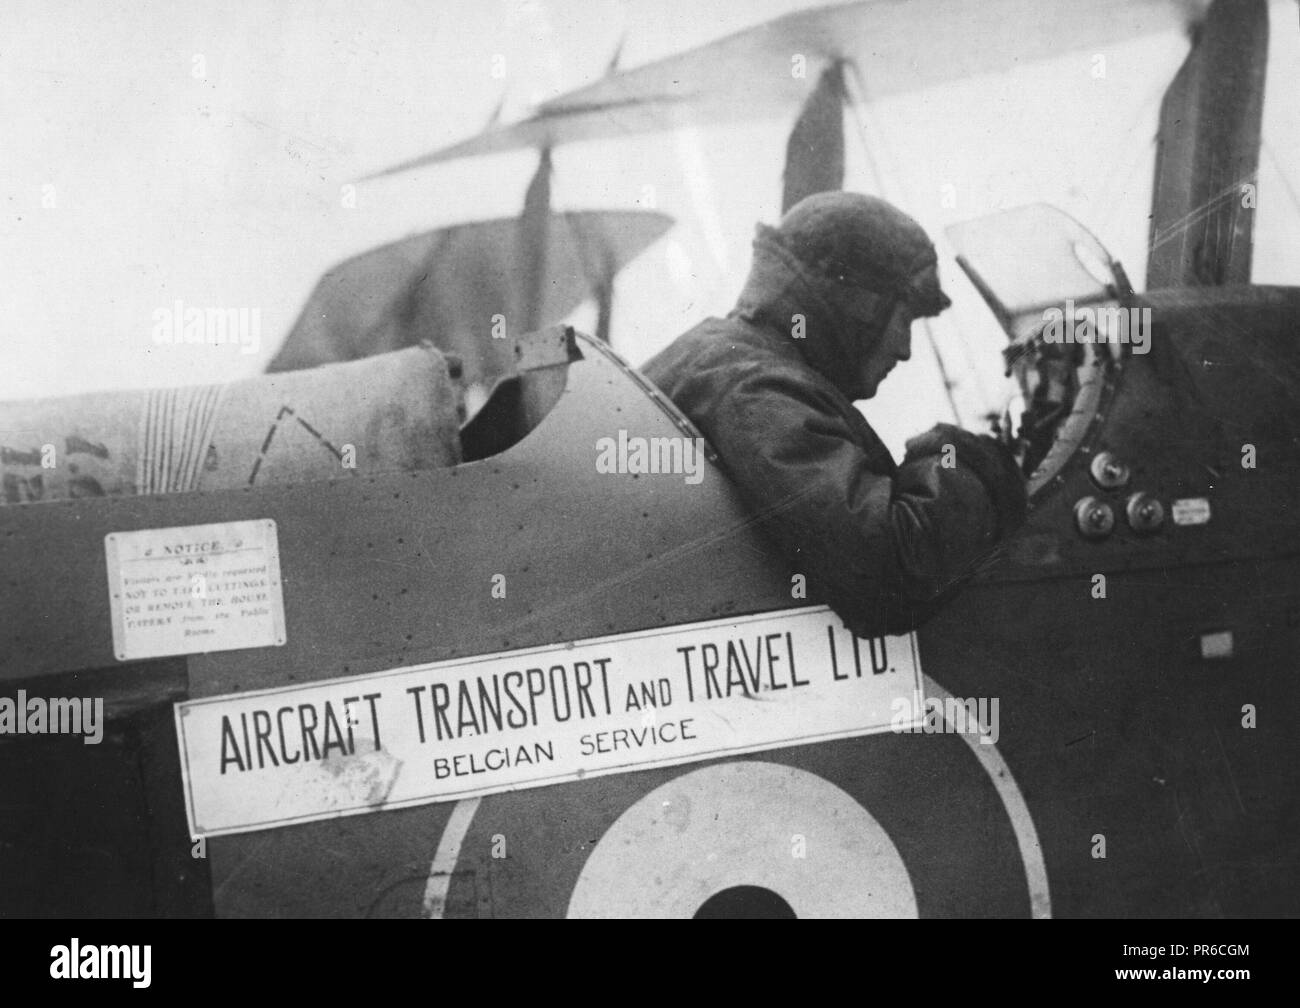 1919 - Frieden verwendet für den Krieg Flugzeuge. Verwenden Sie für Tausende von Flugzeugen, Leerlauf, nachdem die Feindseligkeiten eingestellt hatte, teilweise in England durch den Einsatz von Maschinen und Piloten für den Transport von Waren und Lebensmittel gelöst. Stockfoto